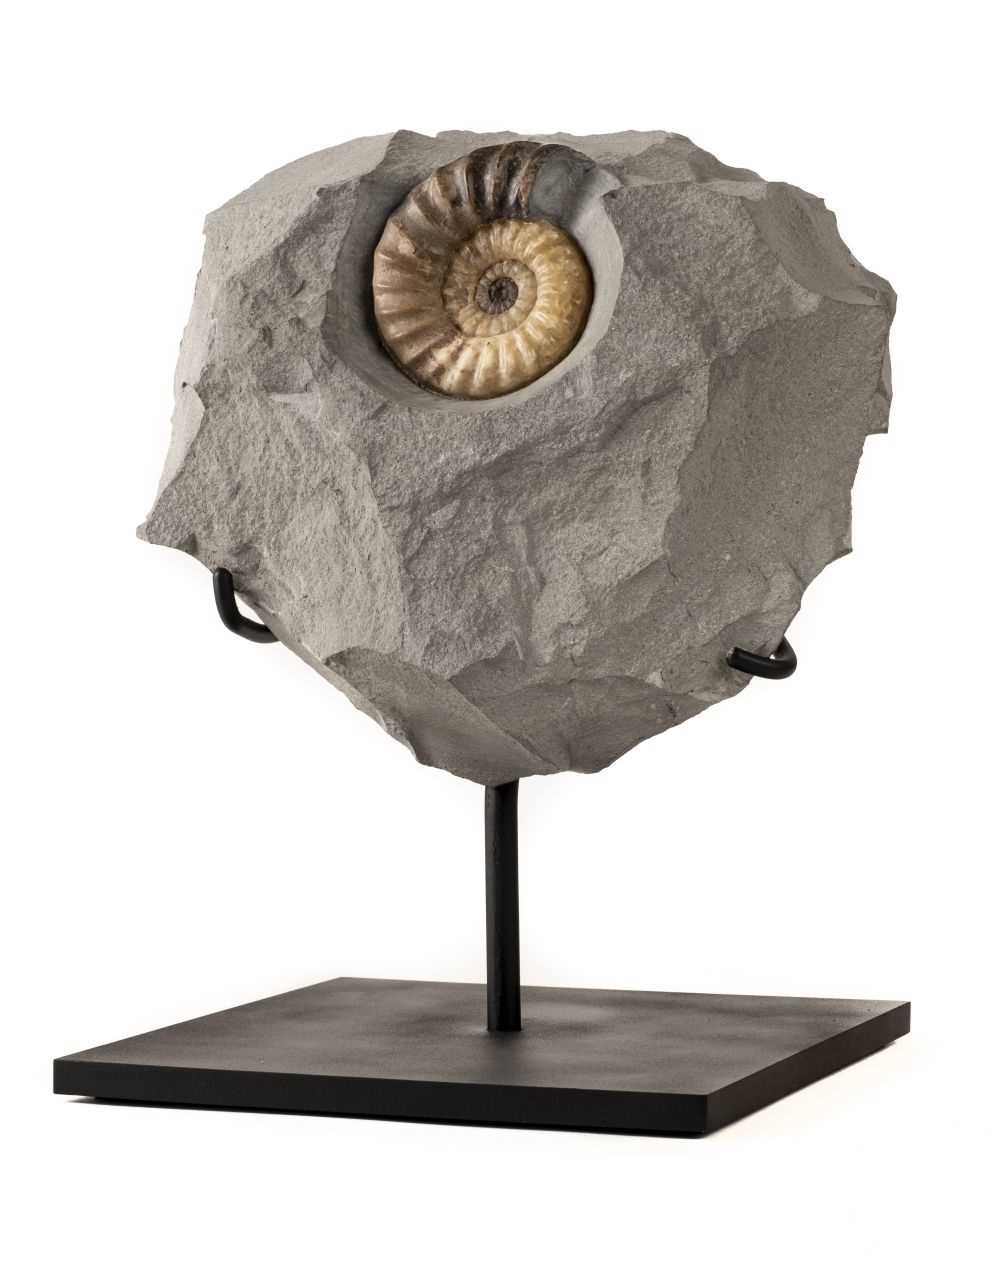 Lot 281 - Fossil Ammonite in Nodule.